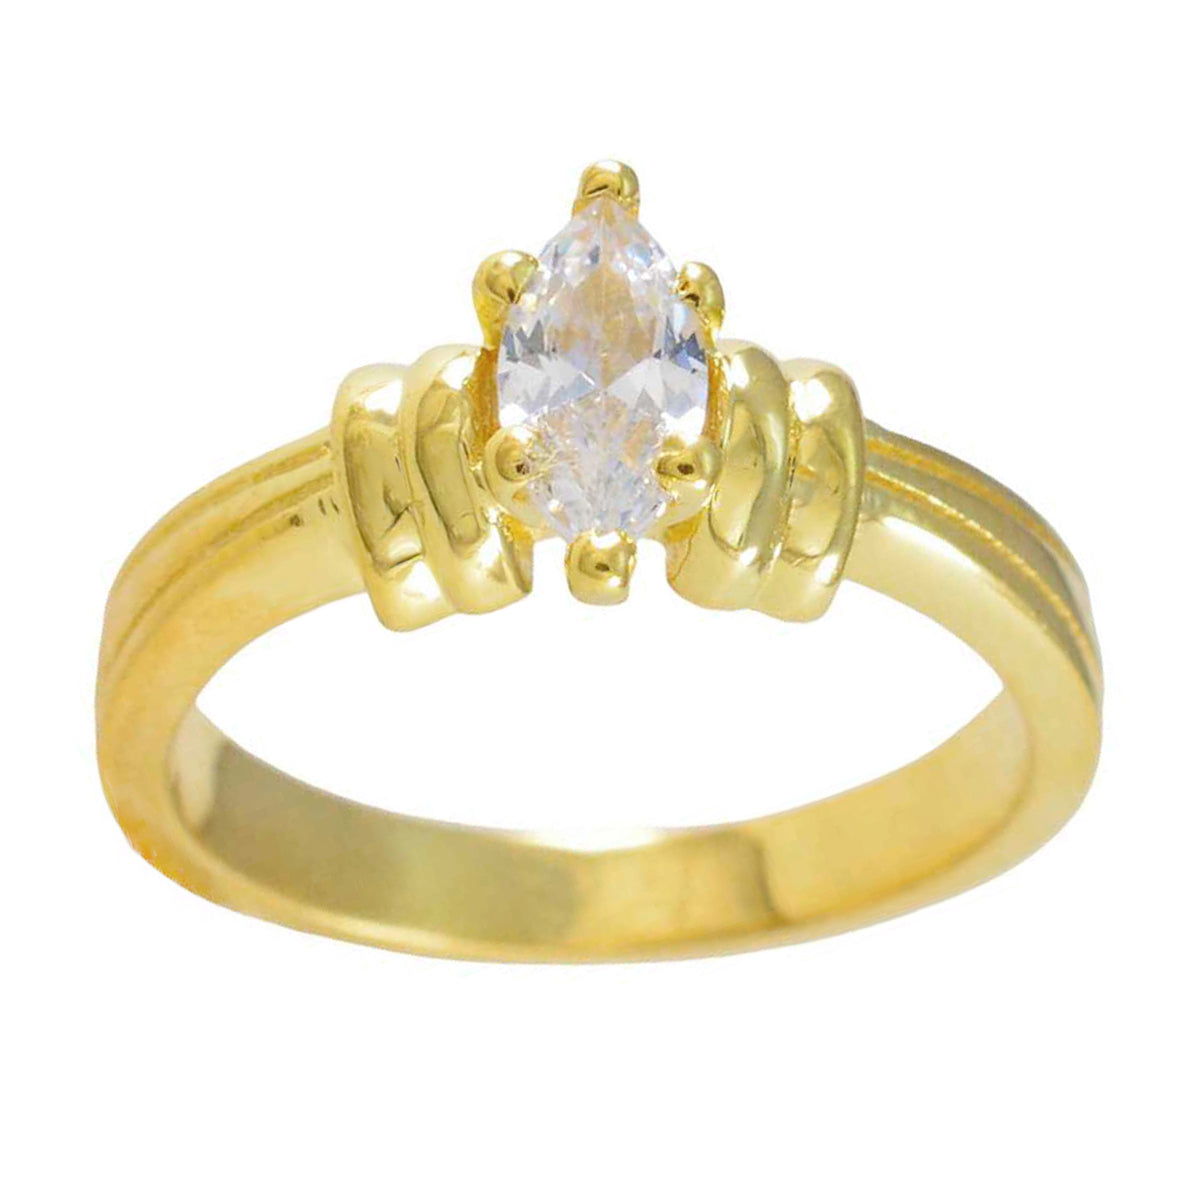 anello esportatore riyo in argento con placcatura in oro giallo anello con montatura a griffe a forma di marquise in pietra bianca cz